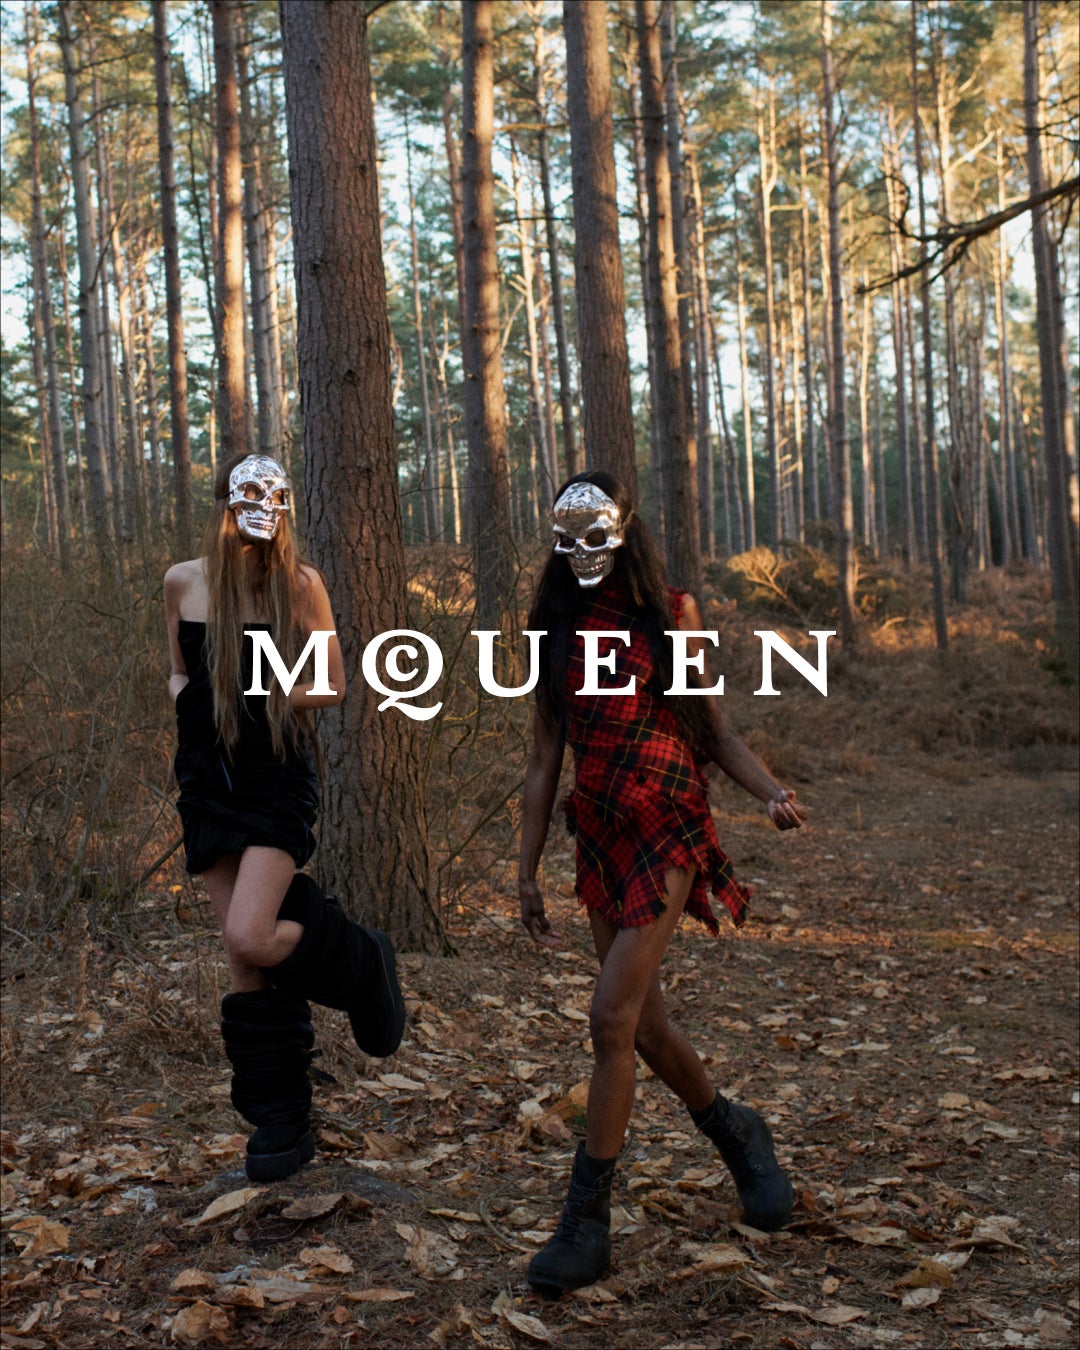 【Alexander McQueen】クリエイティブ・ディレクター、ショーン・マクギアーによるマックイーン